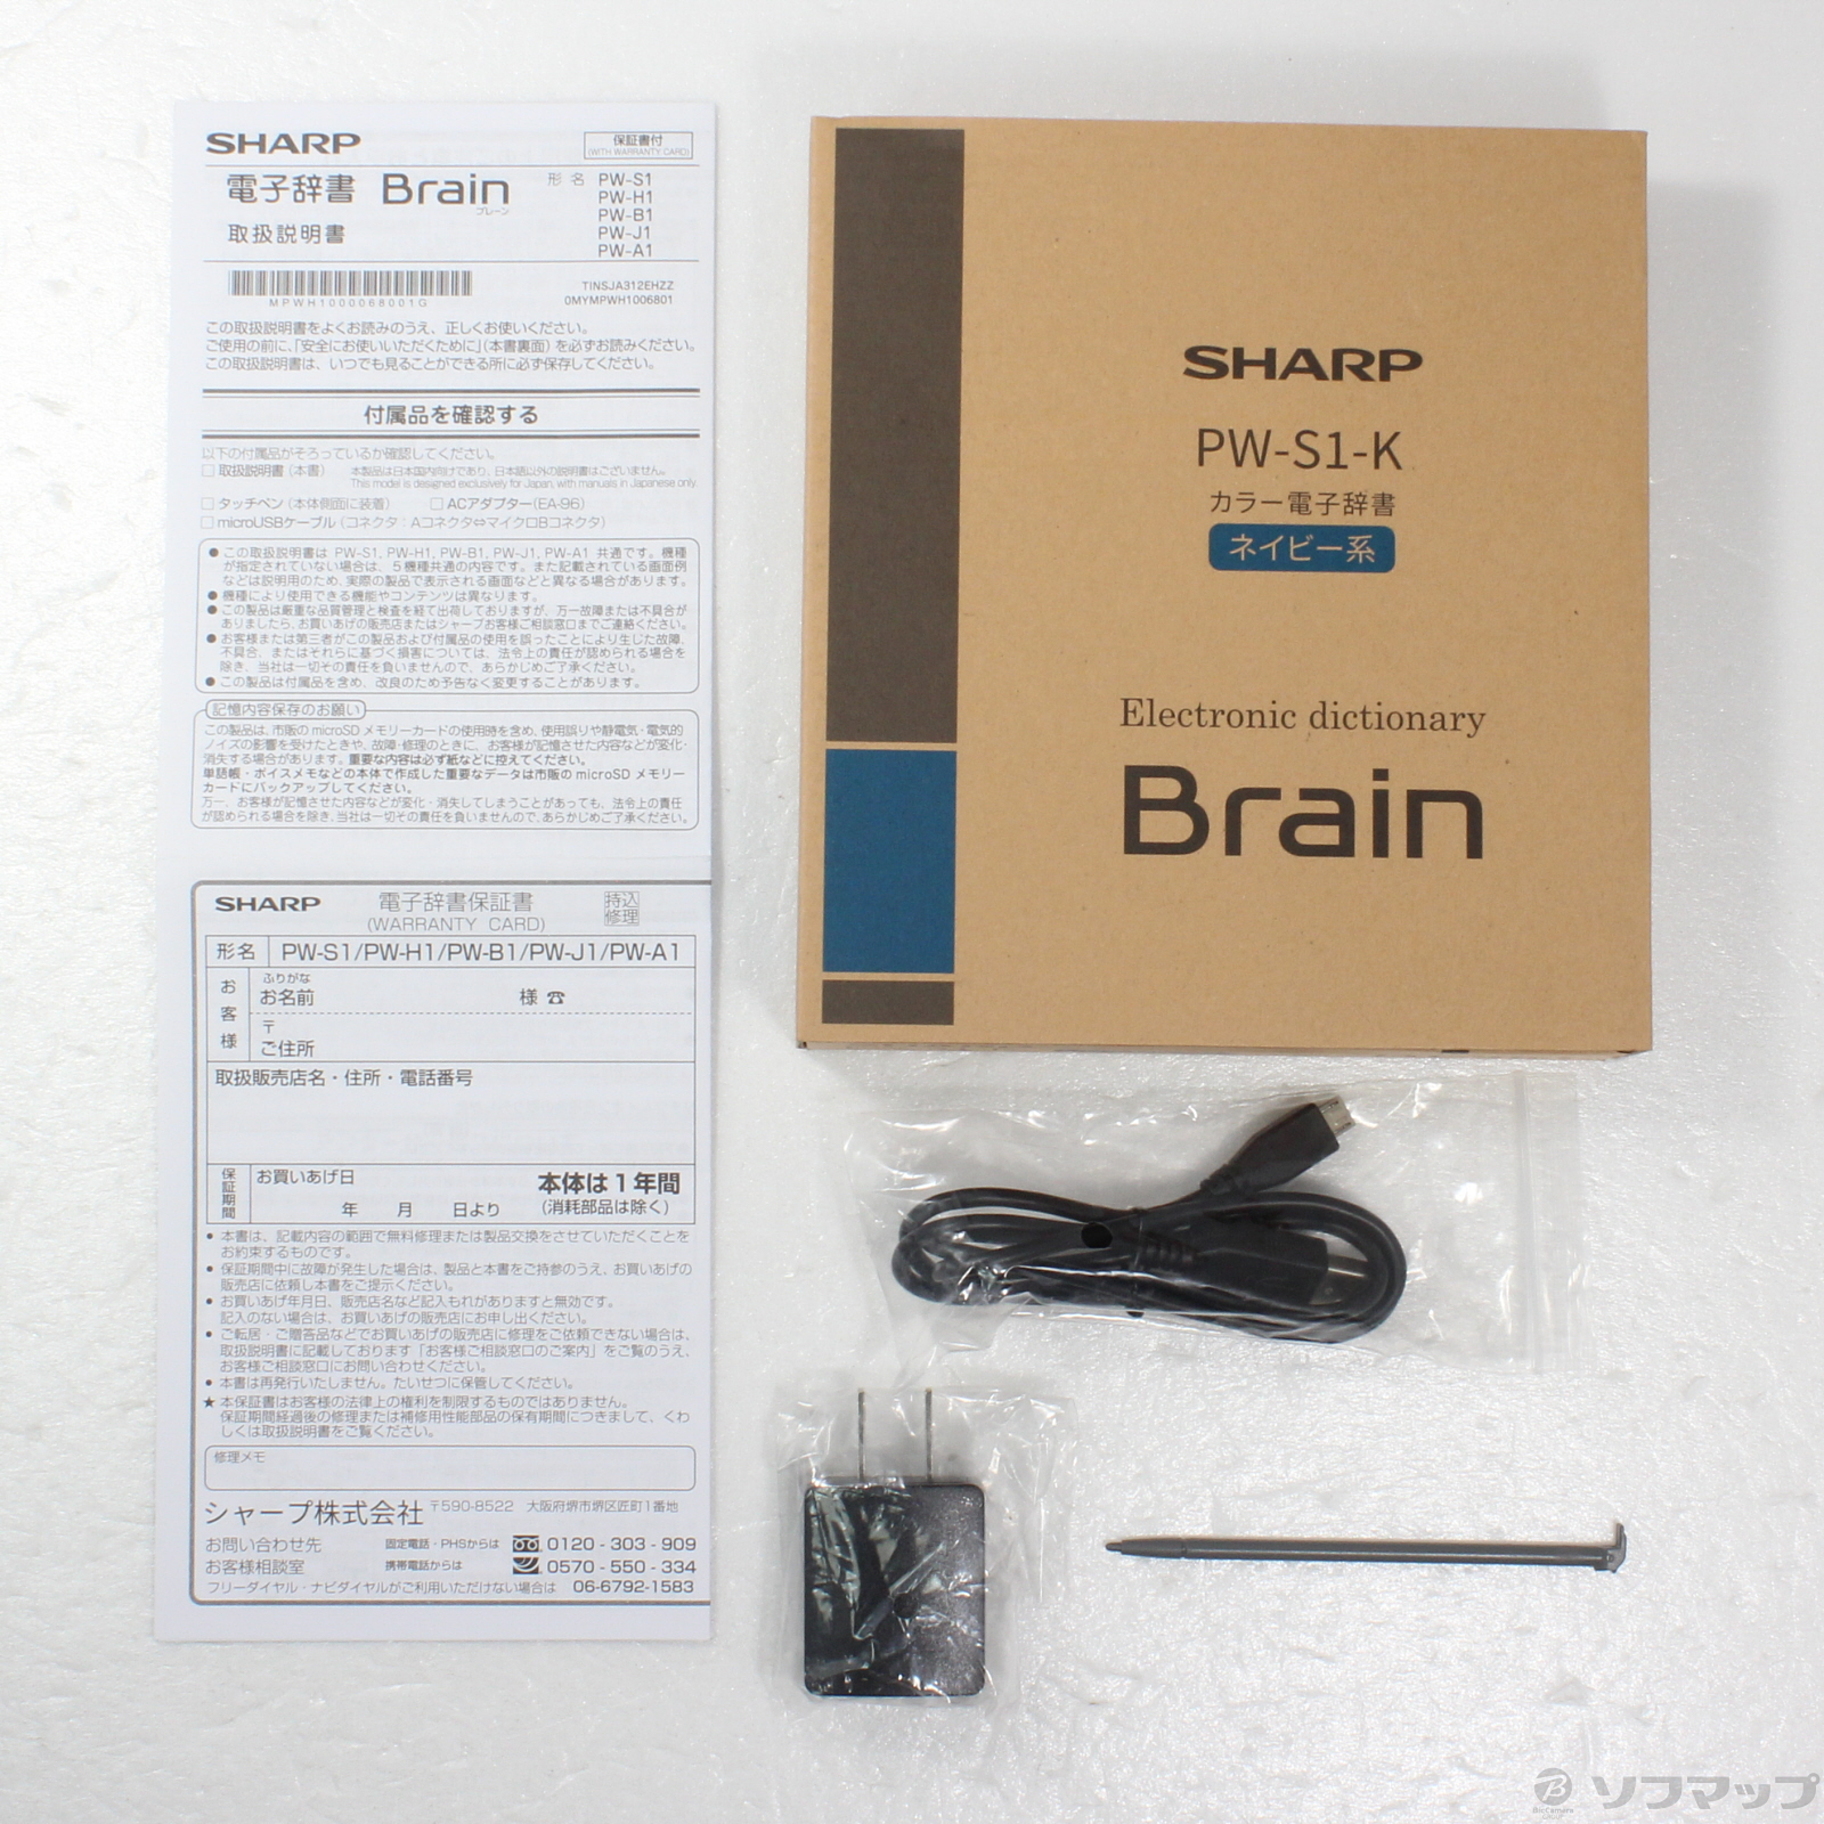 シャープ PW-S1-K カラー電子辞書 Brain 英語強化 高校生モデル ネイビー系 - 8